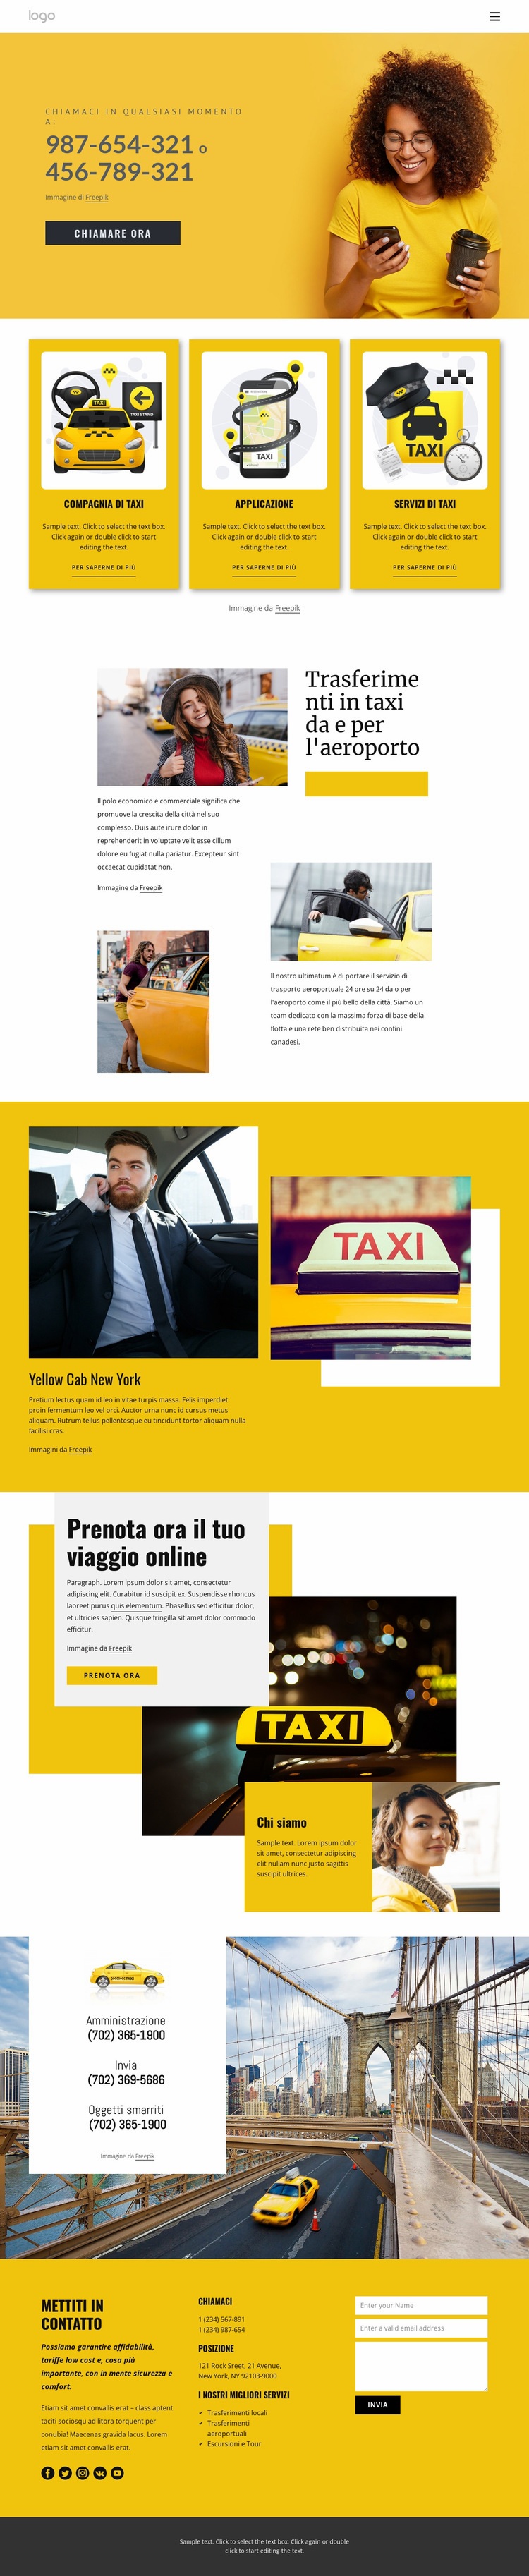 Servizio taxi di qualità Un modello di pagina